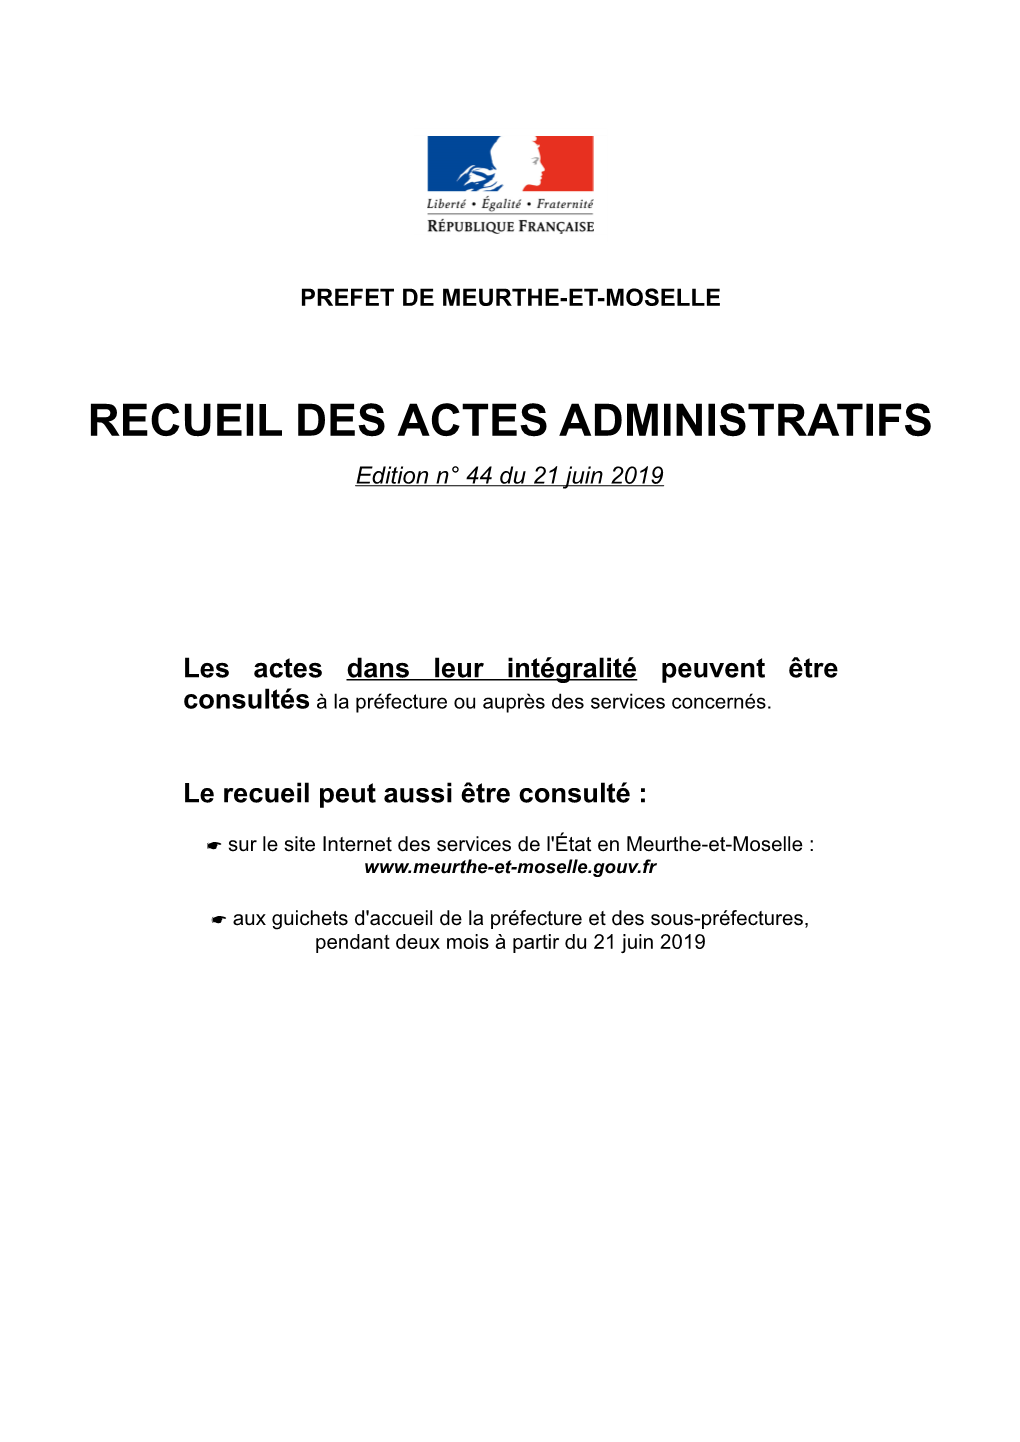 RECUEIL DES ACTES ADMINISTRATIFS Edition N° 44 Du 21 Juin 2019